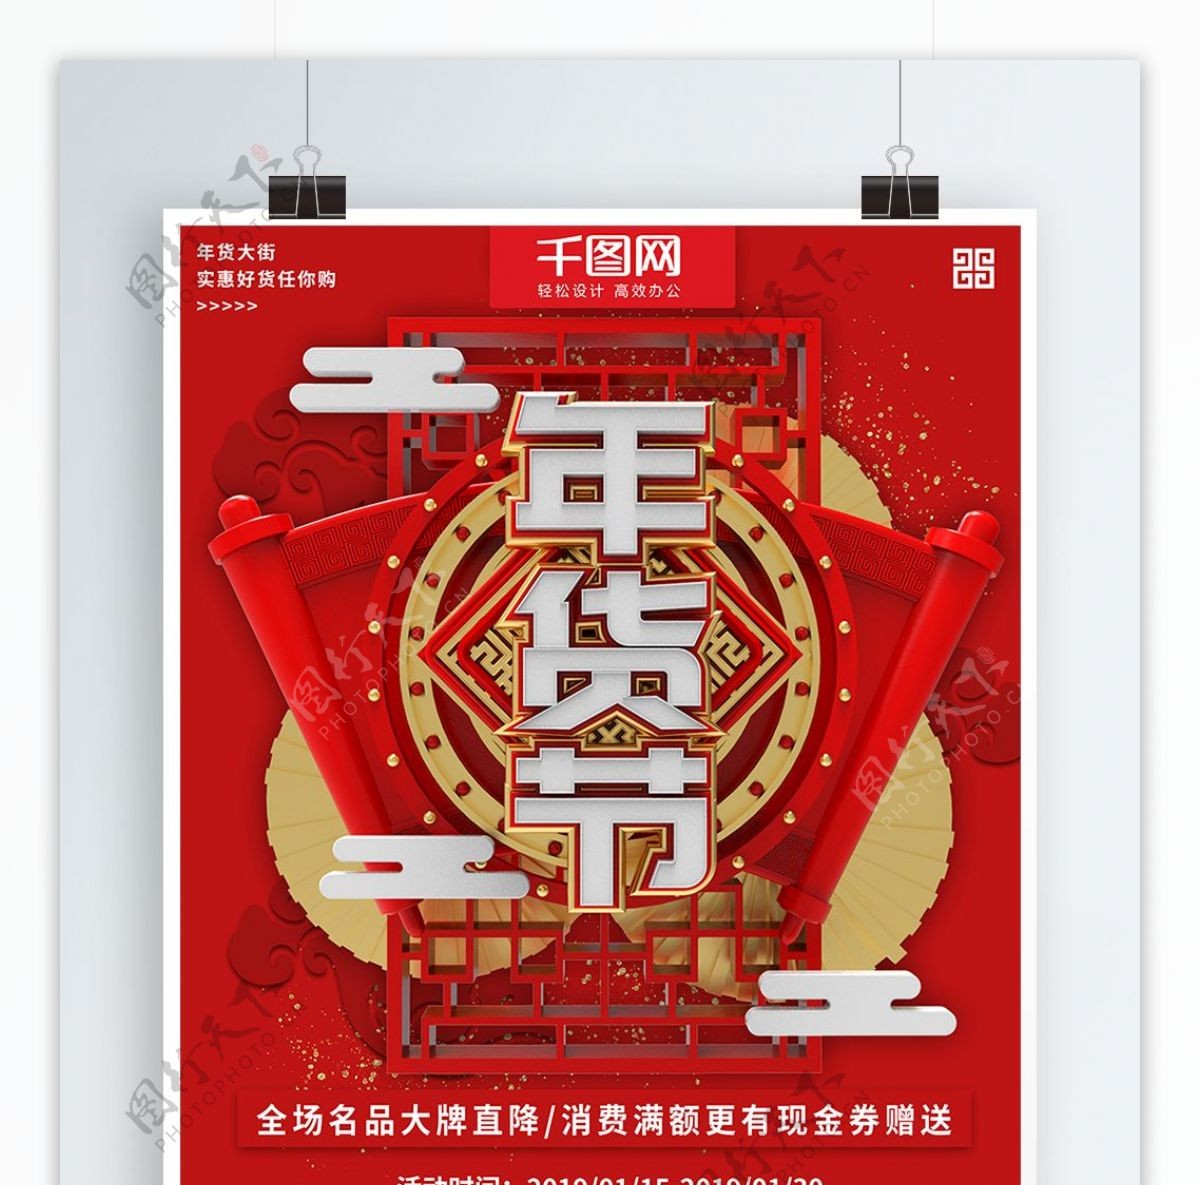 红色大气立体年货节促销商业宣传海报